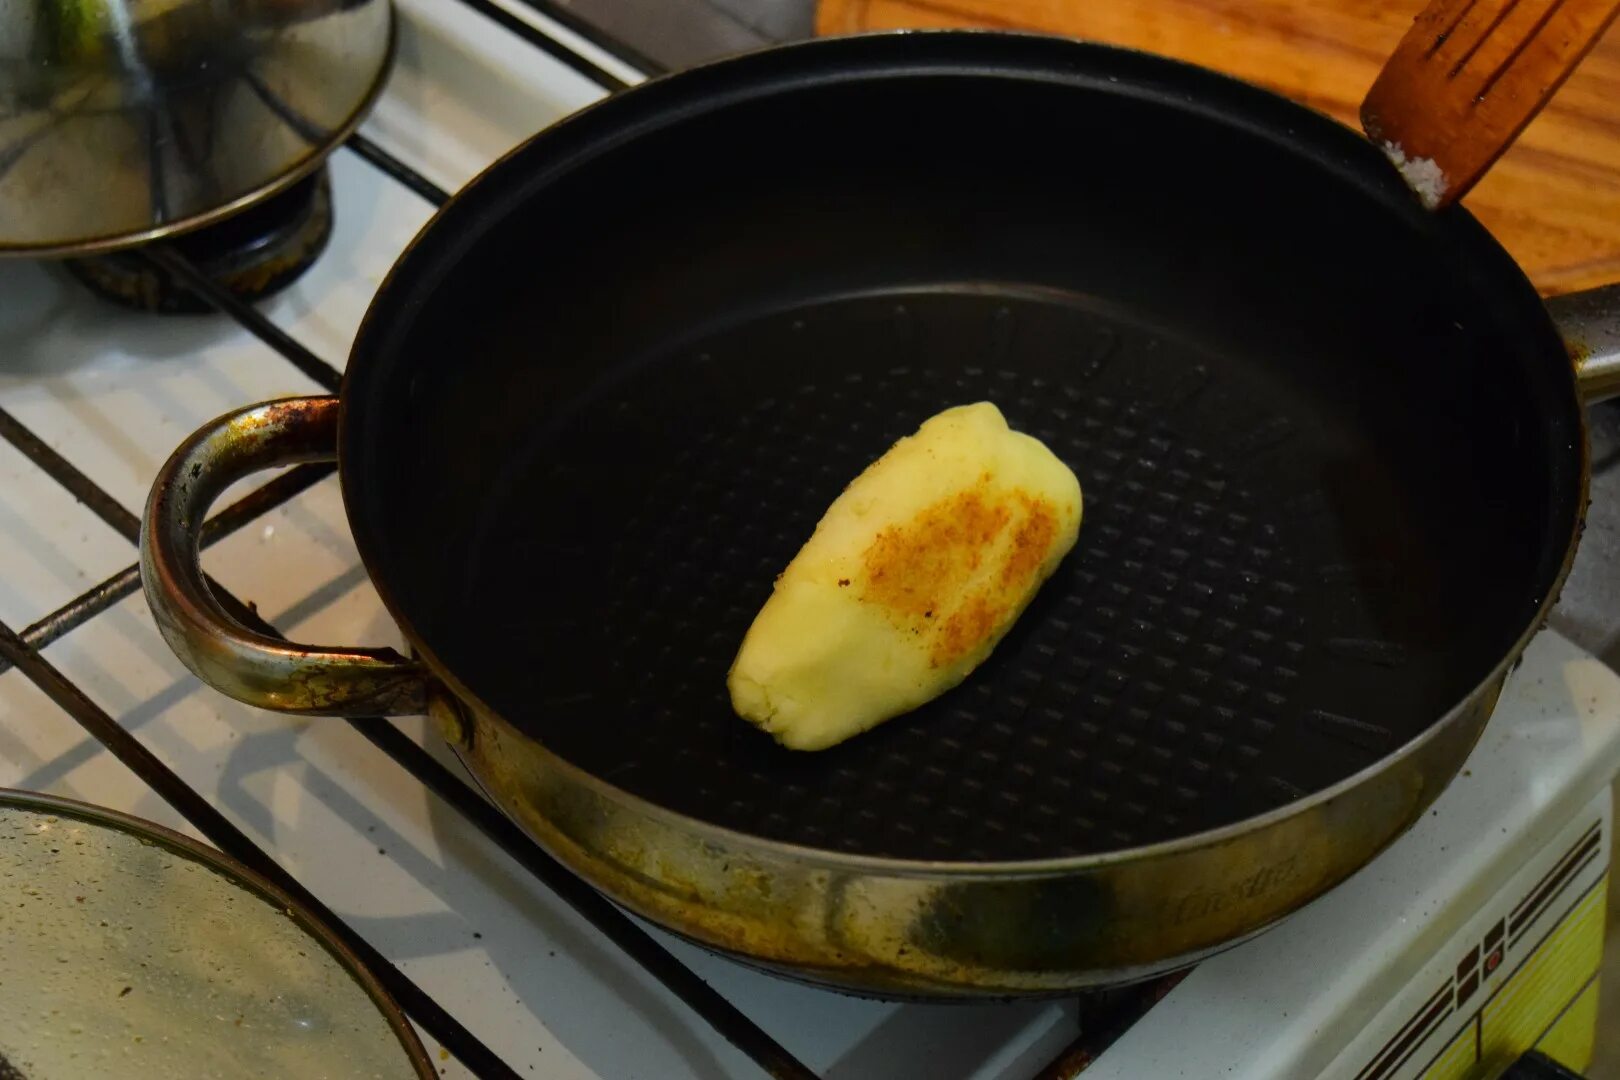 Сковородка для жарки картошки. Жареная картошка на чугунной сковороде. Крышка на сковородку для жарки картофеля. Сковорода для жарки картошки каменная. Нужно ли закрывать крышкой при жарке